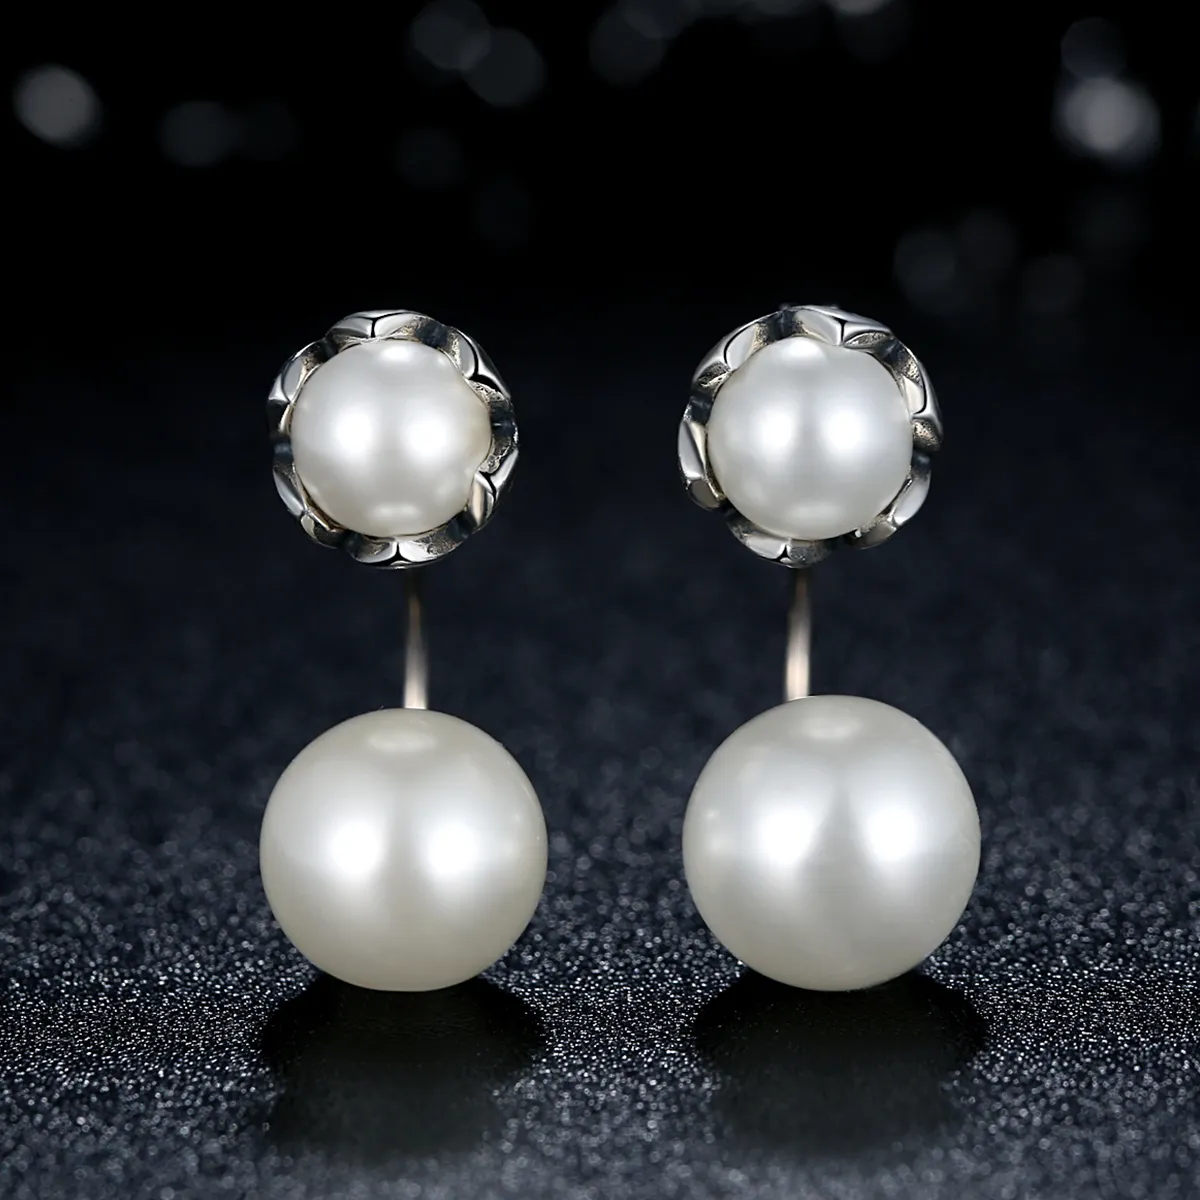 Pandora Style Silver Pearl Stud Earrings - SCE002